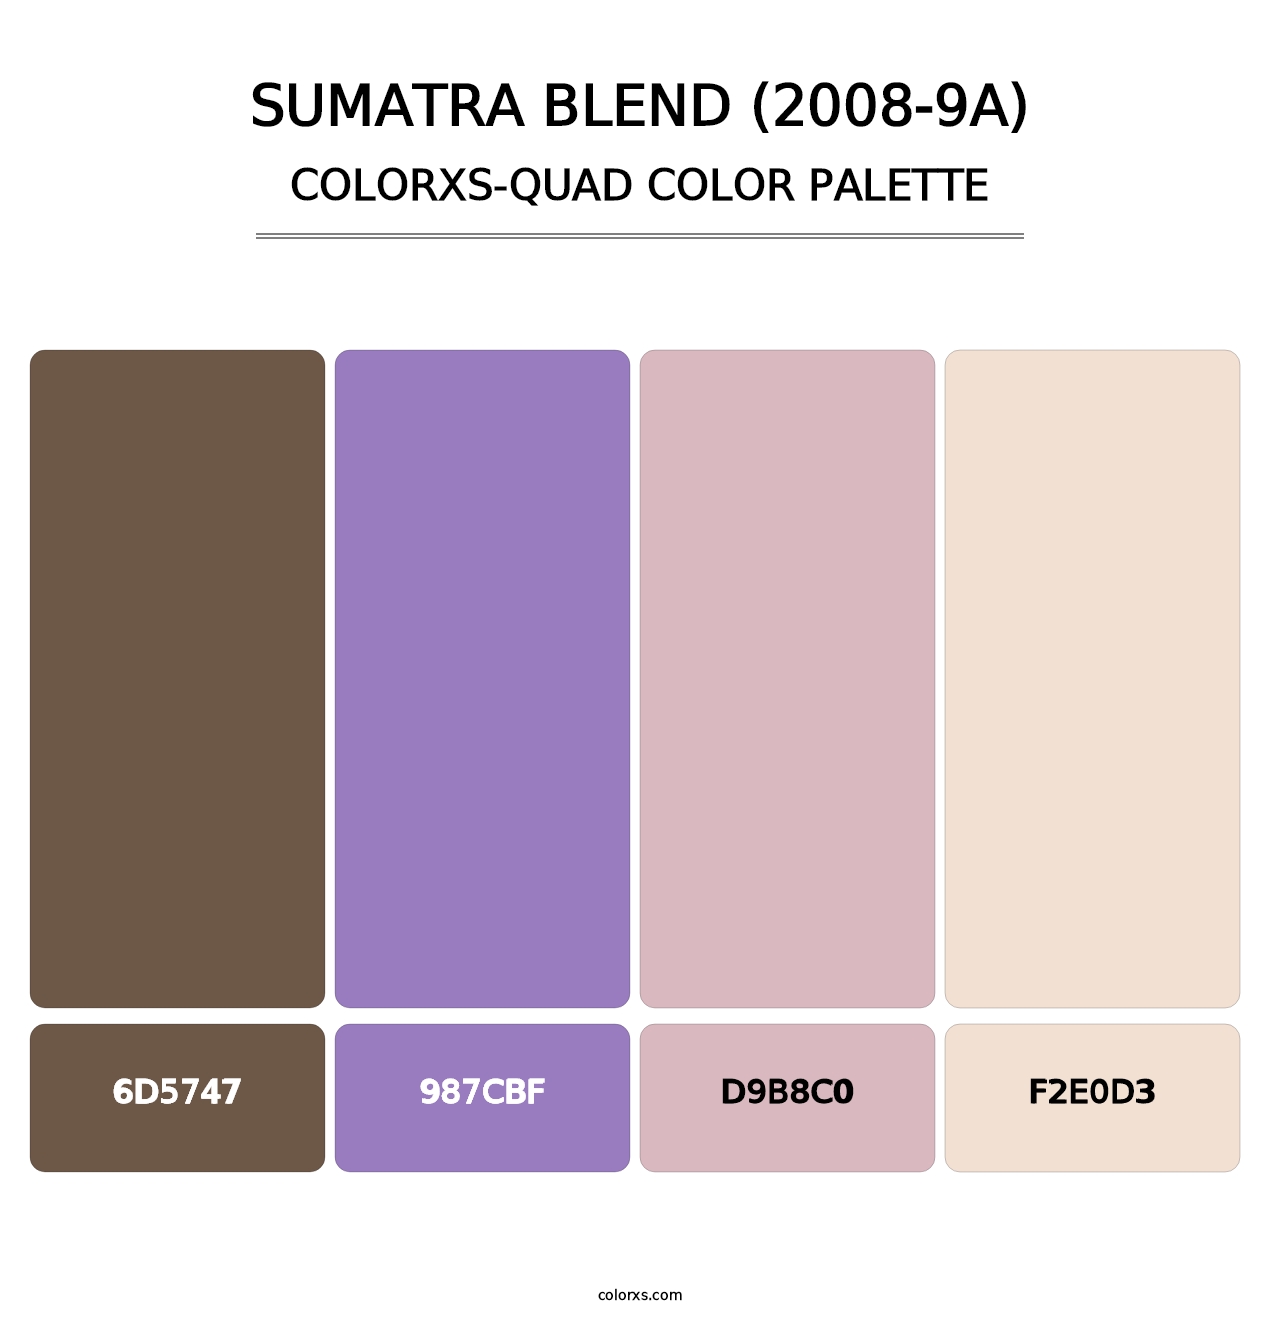 Sumatra Blend (2008-9A) - Colorxs Quad Palette